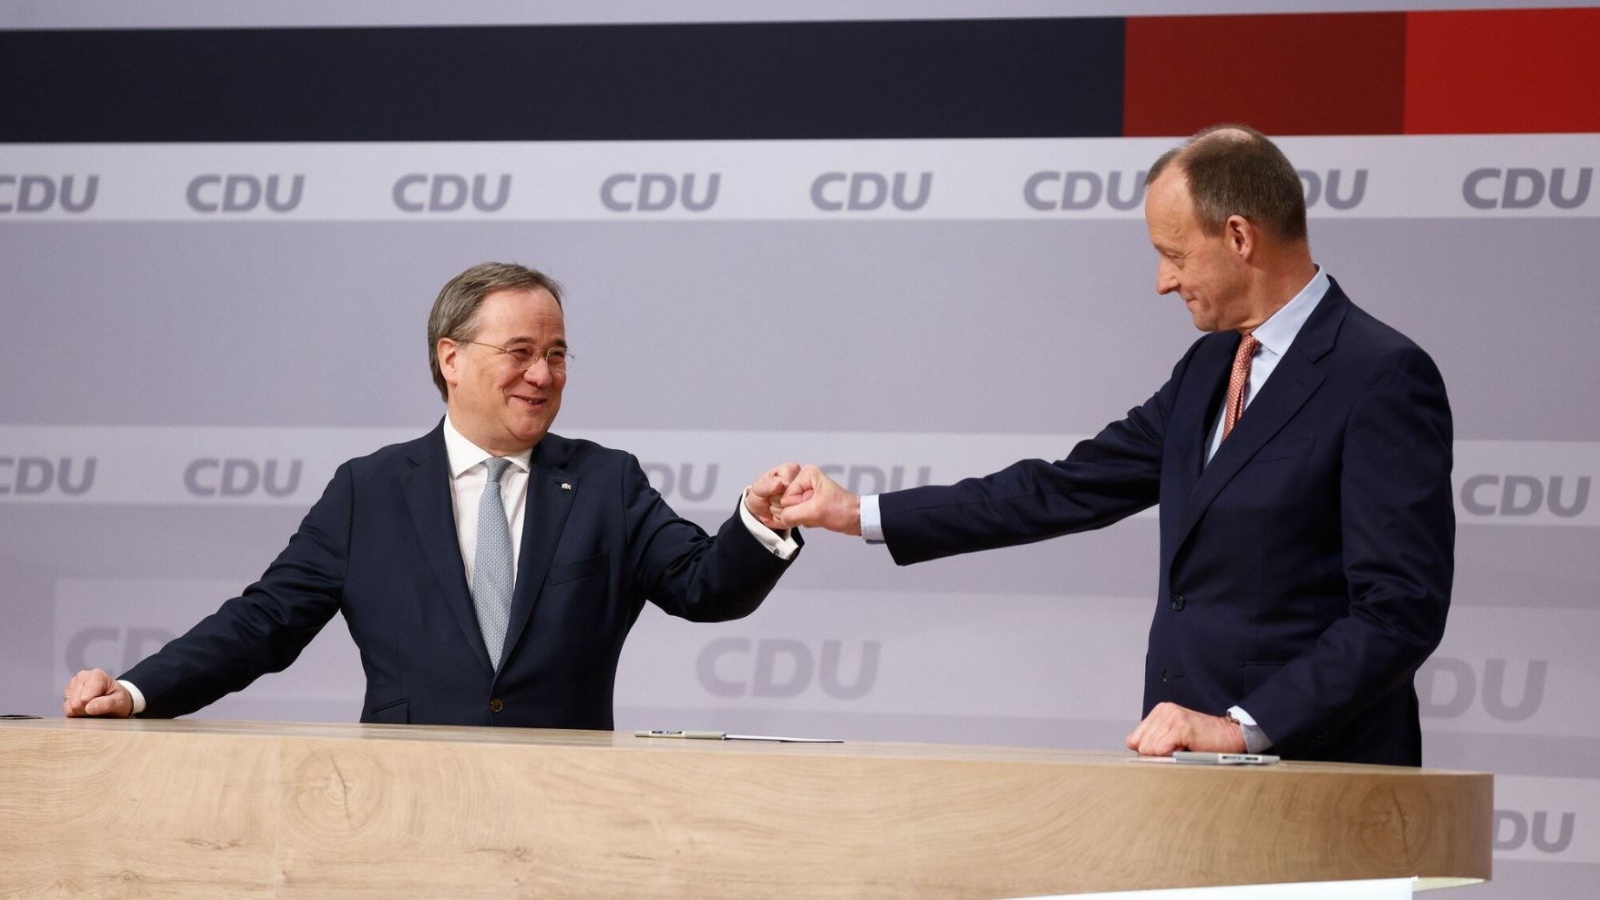 Der erste Glückwunsch kam vom unterlegenen Kandidaten Friedrich Merz: Armin Laschet ist neuer CDU-Vorsitzender 